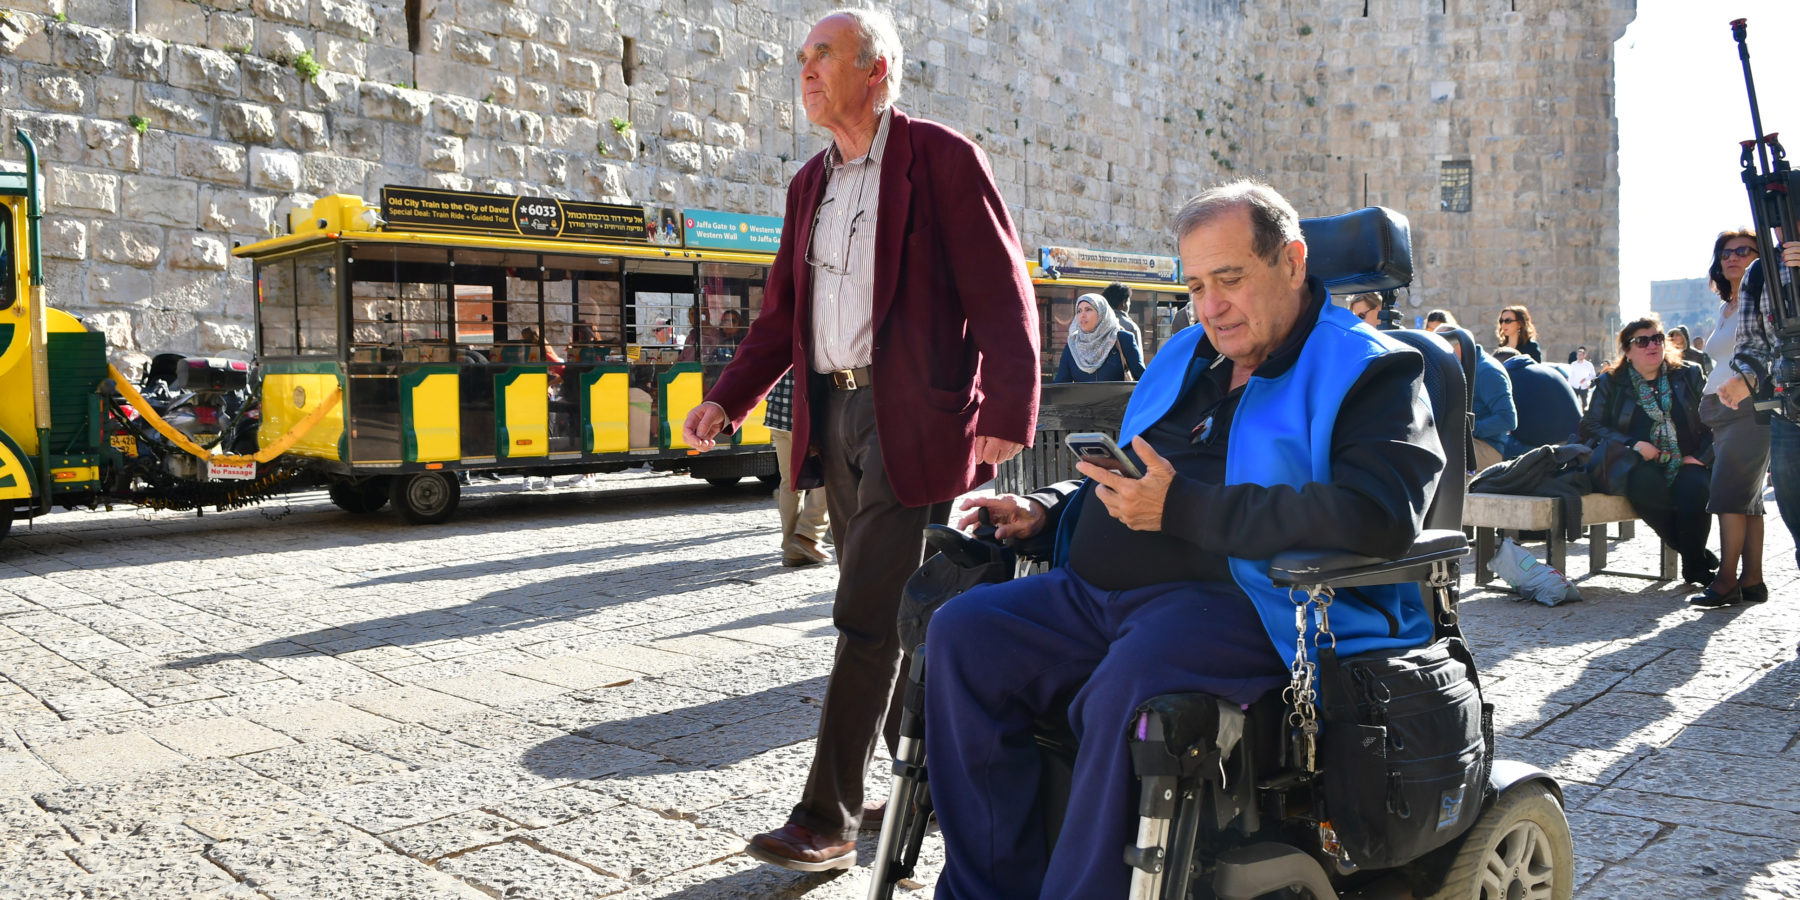 Maleta de Viajes, Israel, Notiviajeros, turismo, viajes, personas con discapacidad, aventuras